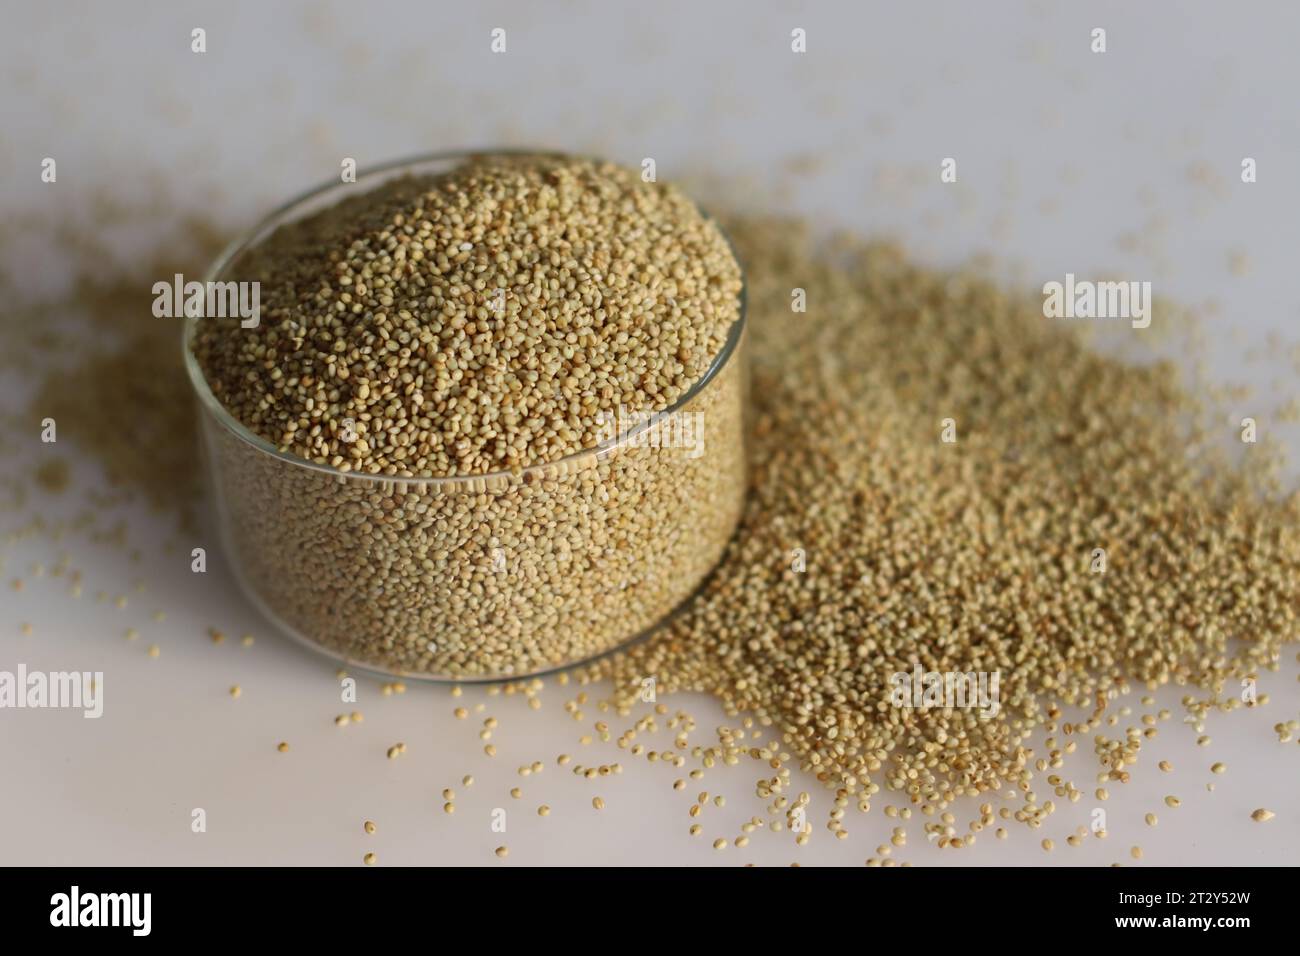 Gros plan de grains de millet brun dans un bol en verre immaculé rempli à ras bord, mettant en valeur ses grains sains, idéal pour illustrer une alimentation saine, Banque D'Images